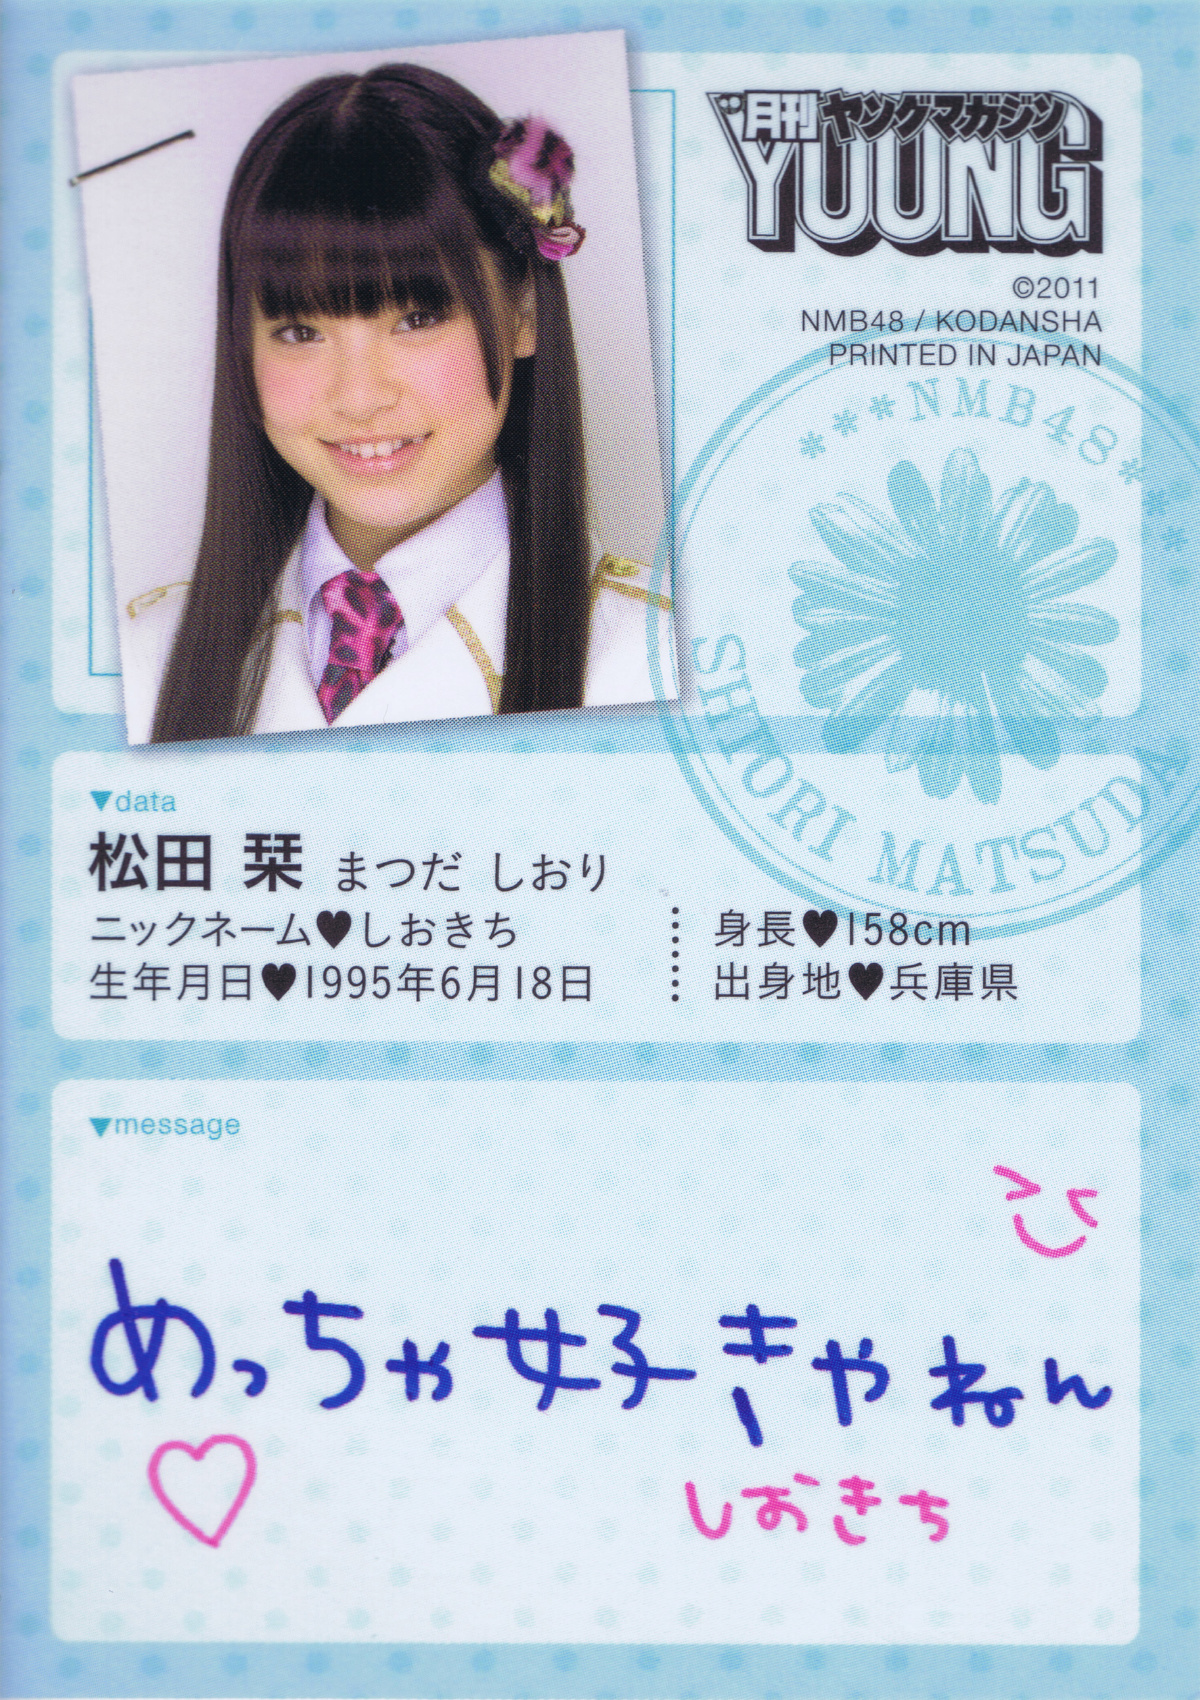 Accessory Trading Card 11 B Matsuda Shiori